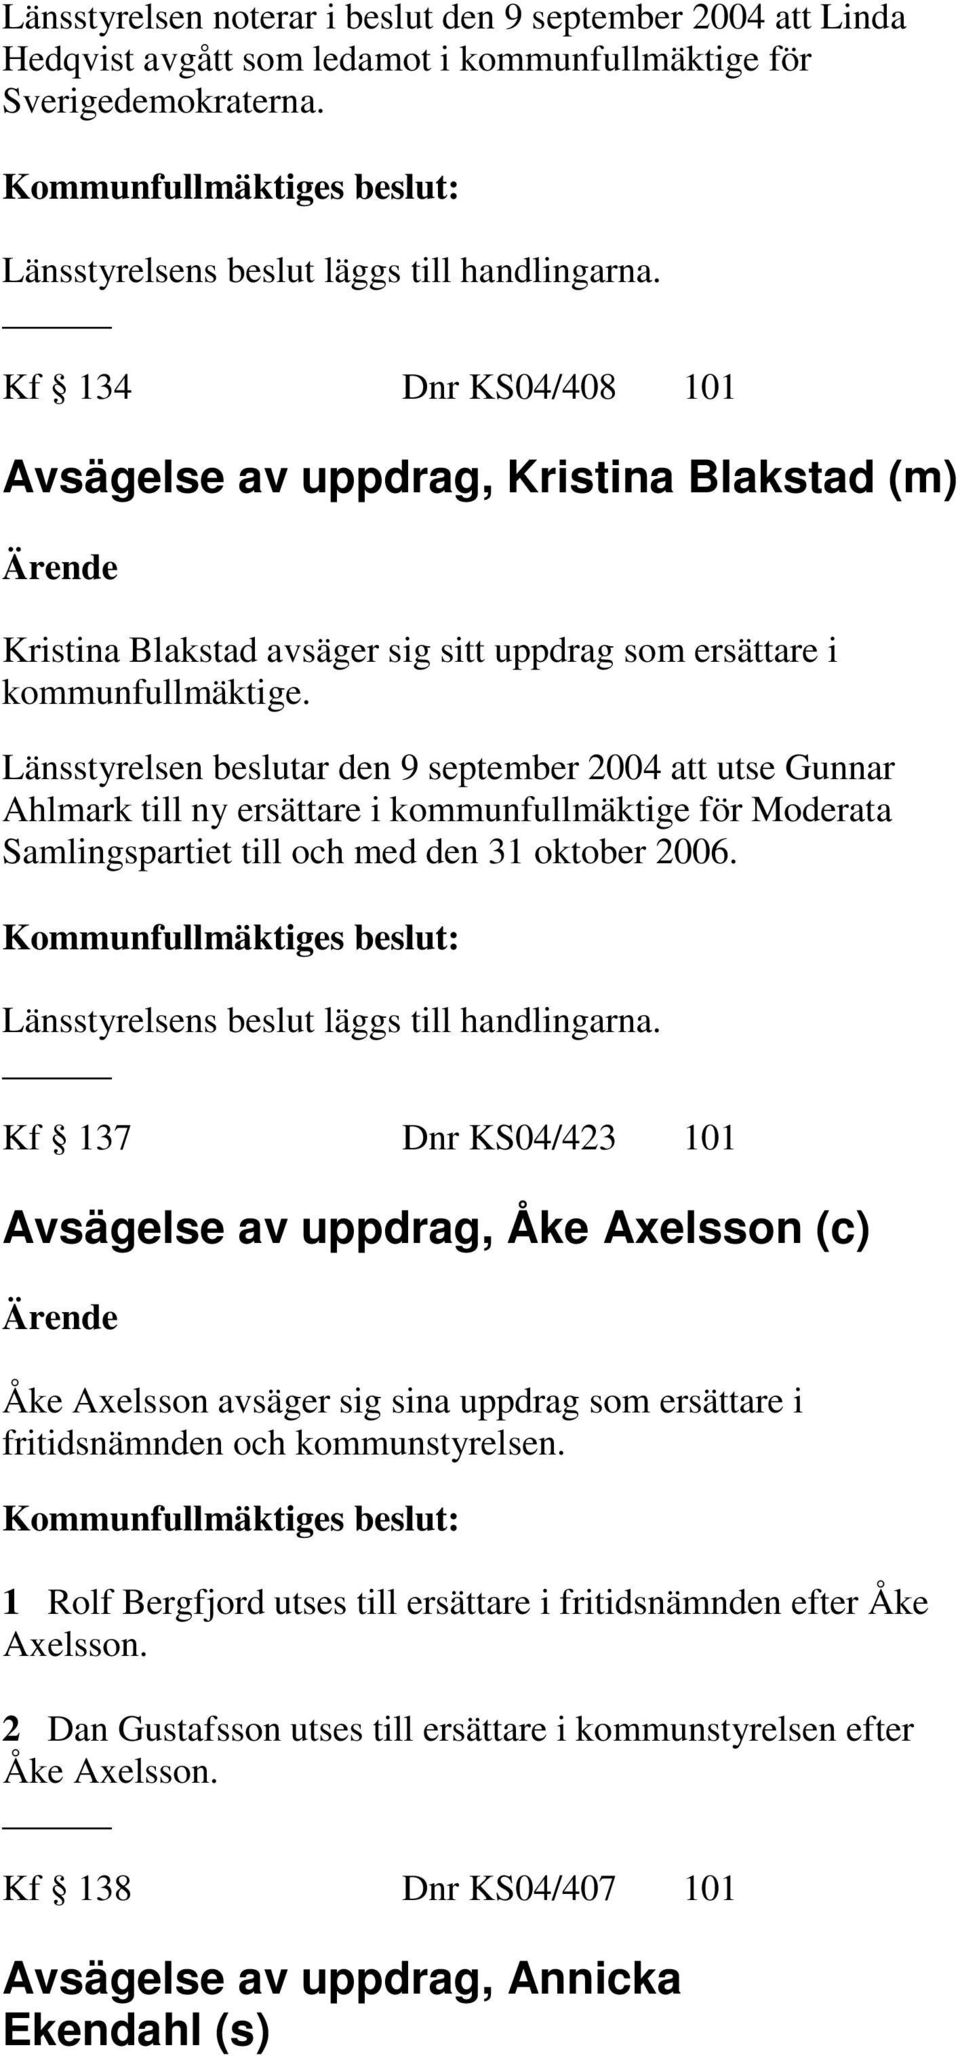 Länsstyrelsen beslutar den 9 september 2004 att utse Gunnar Ahlmark till ny ersättare i kommunfullmäktige för Moderata Samlingspartiet till och med den 31 oktober 2006.